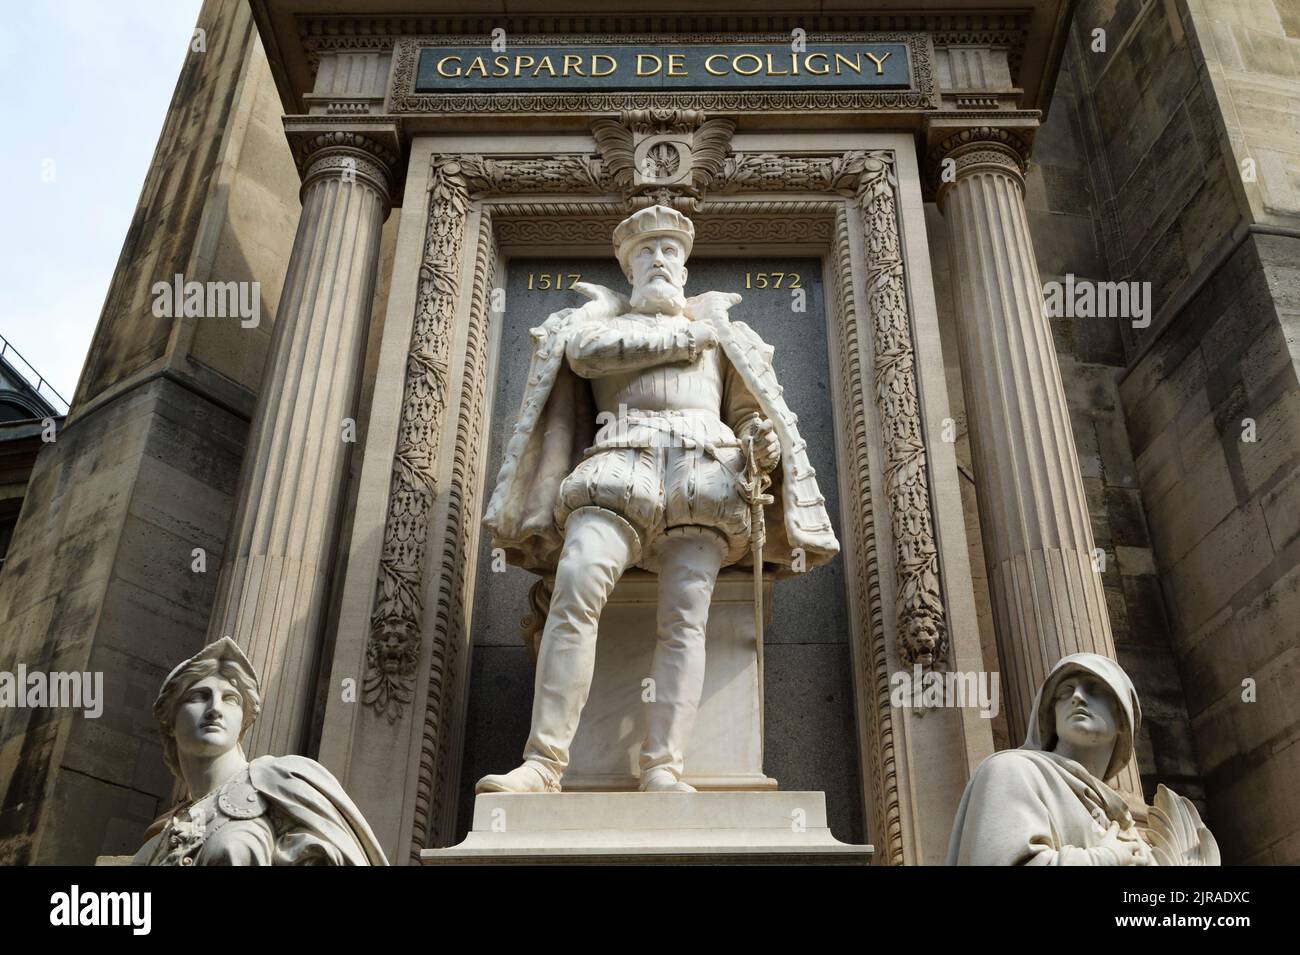 Monumento de Gaspard de Coligny asesinado durante la masacre de San Bartolomé en 1572 - por Gustave Crauk (1889) - Templo Oratorio, rue de Rivoli -París Foto de stock